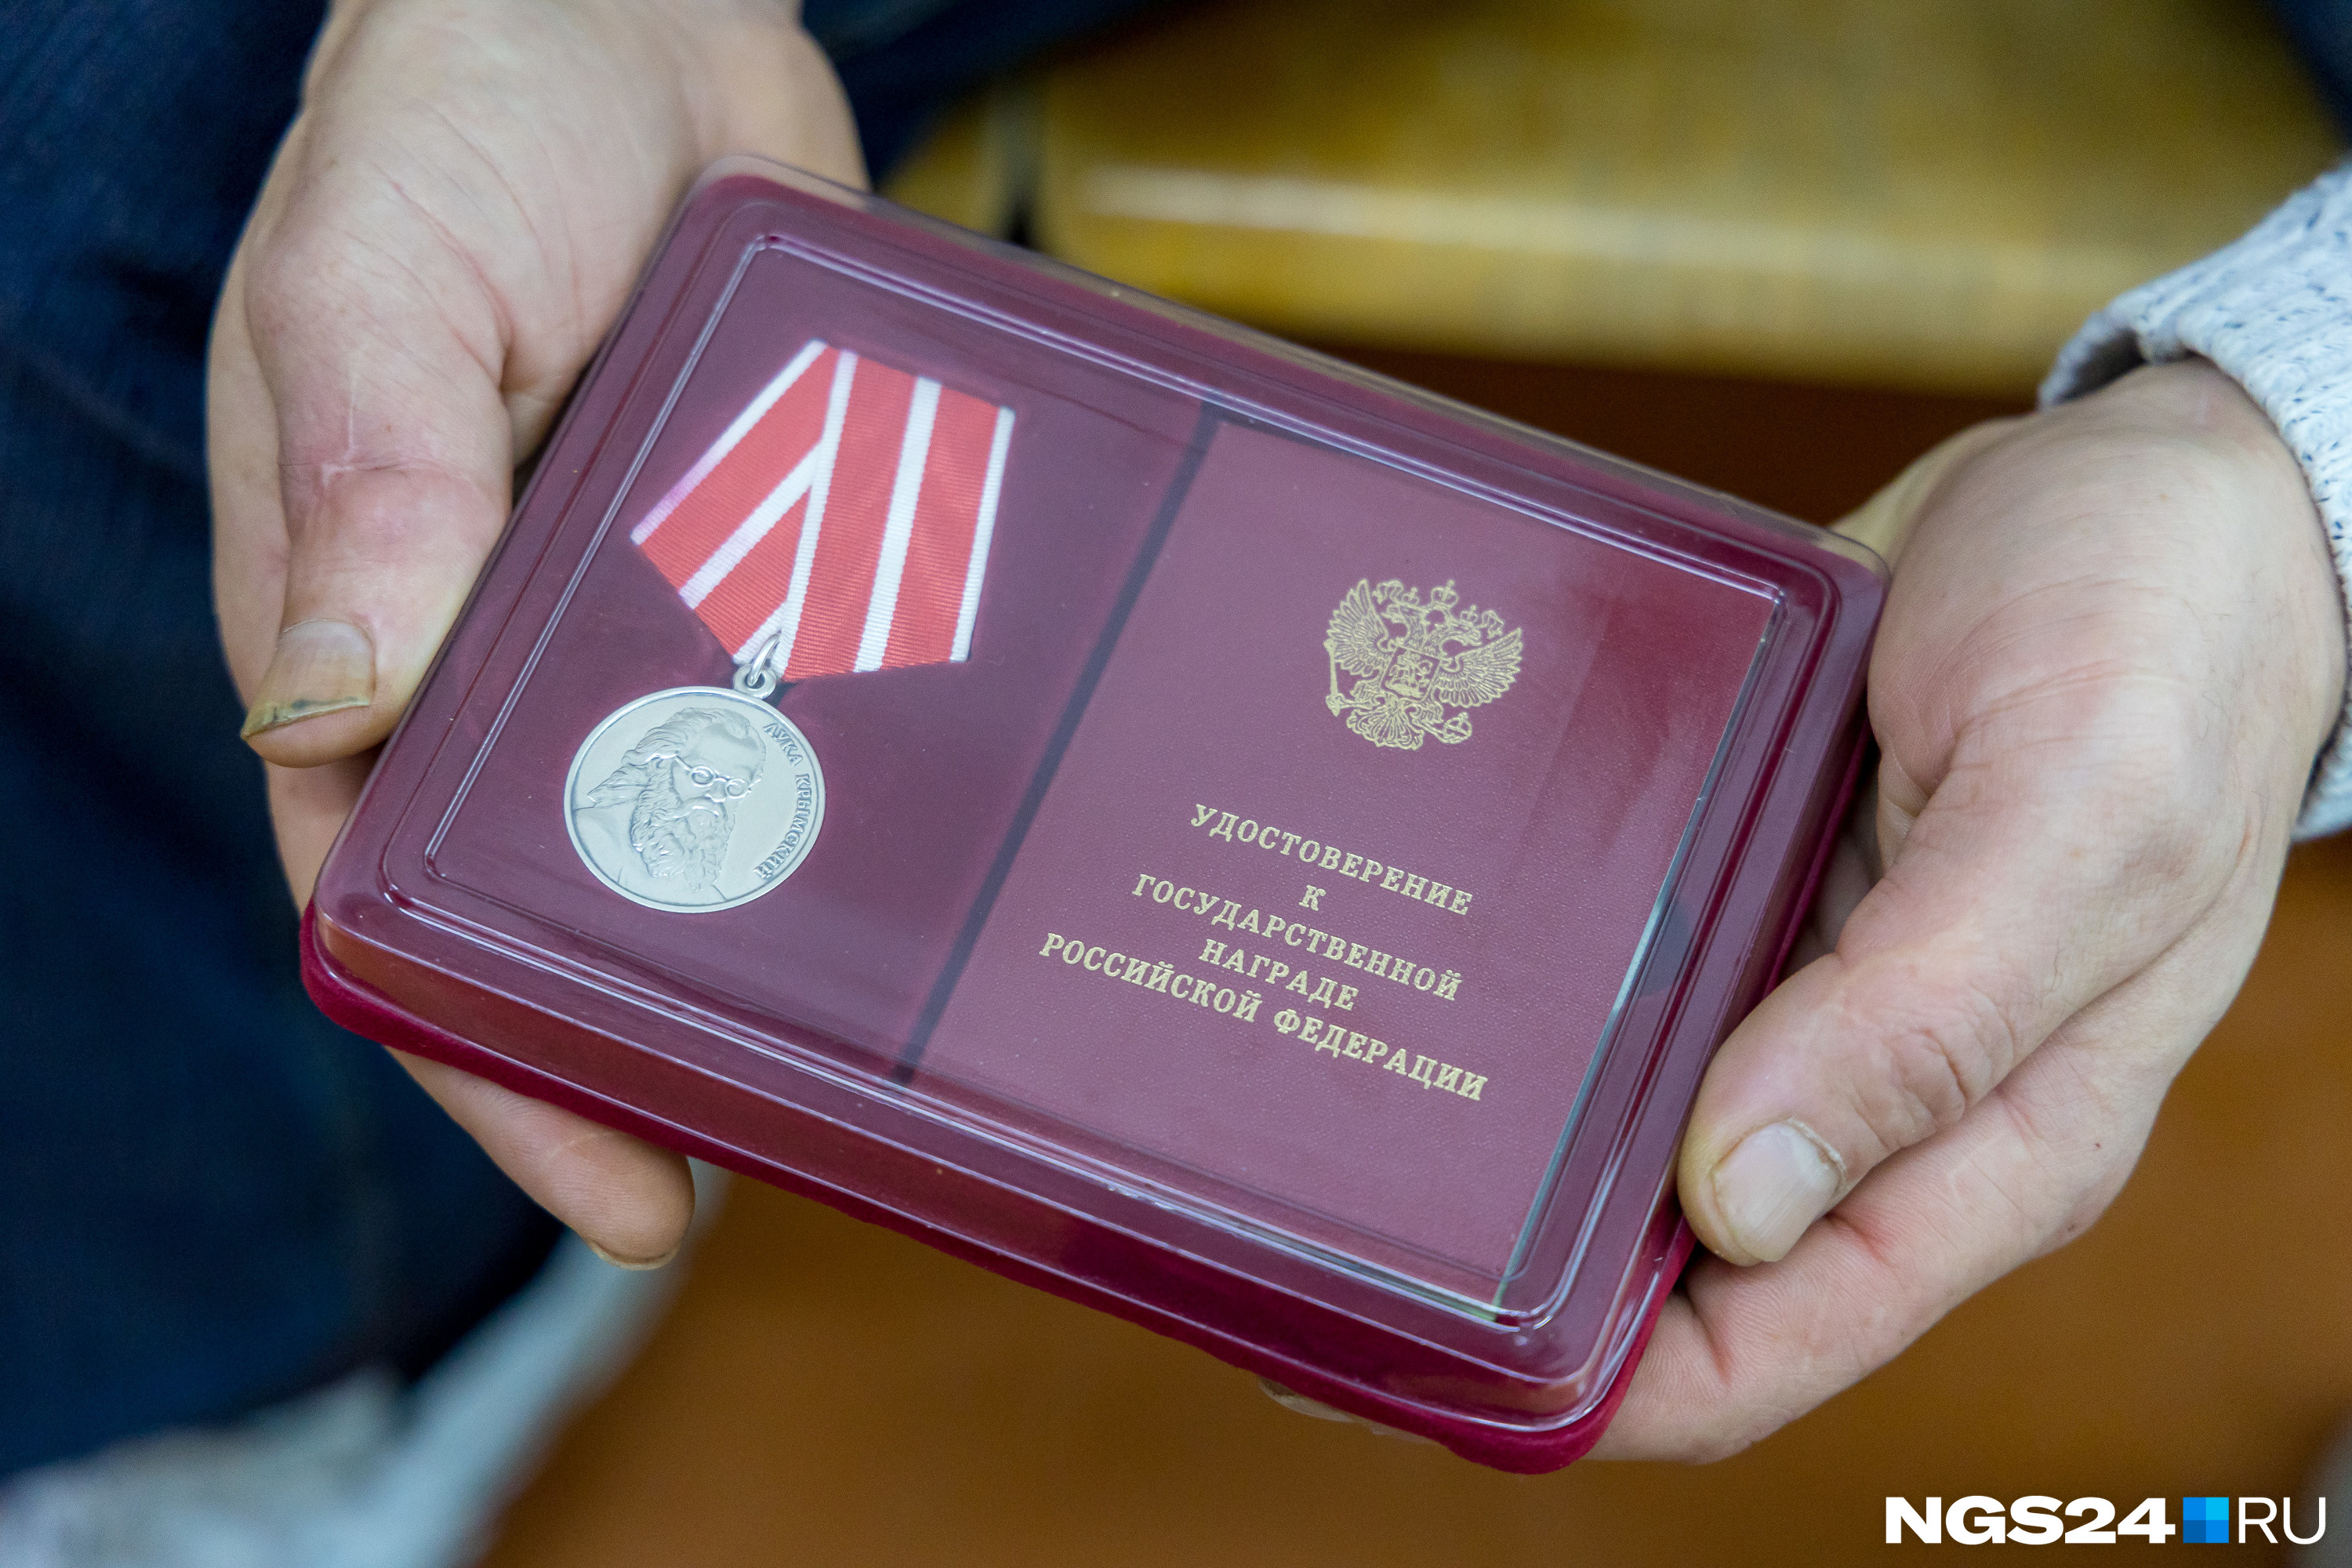 Юрию дали медаль Святого Луки Крымского за спасение 12 человек